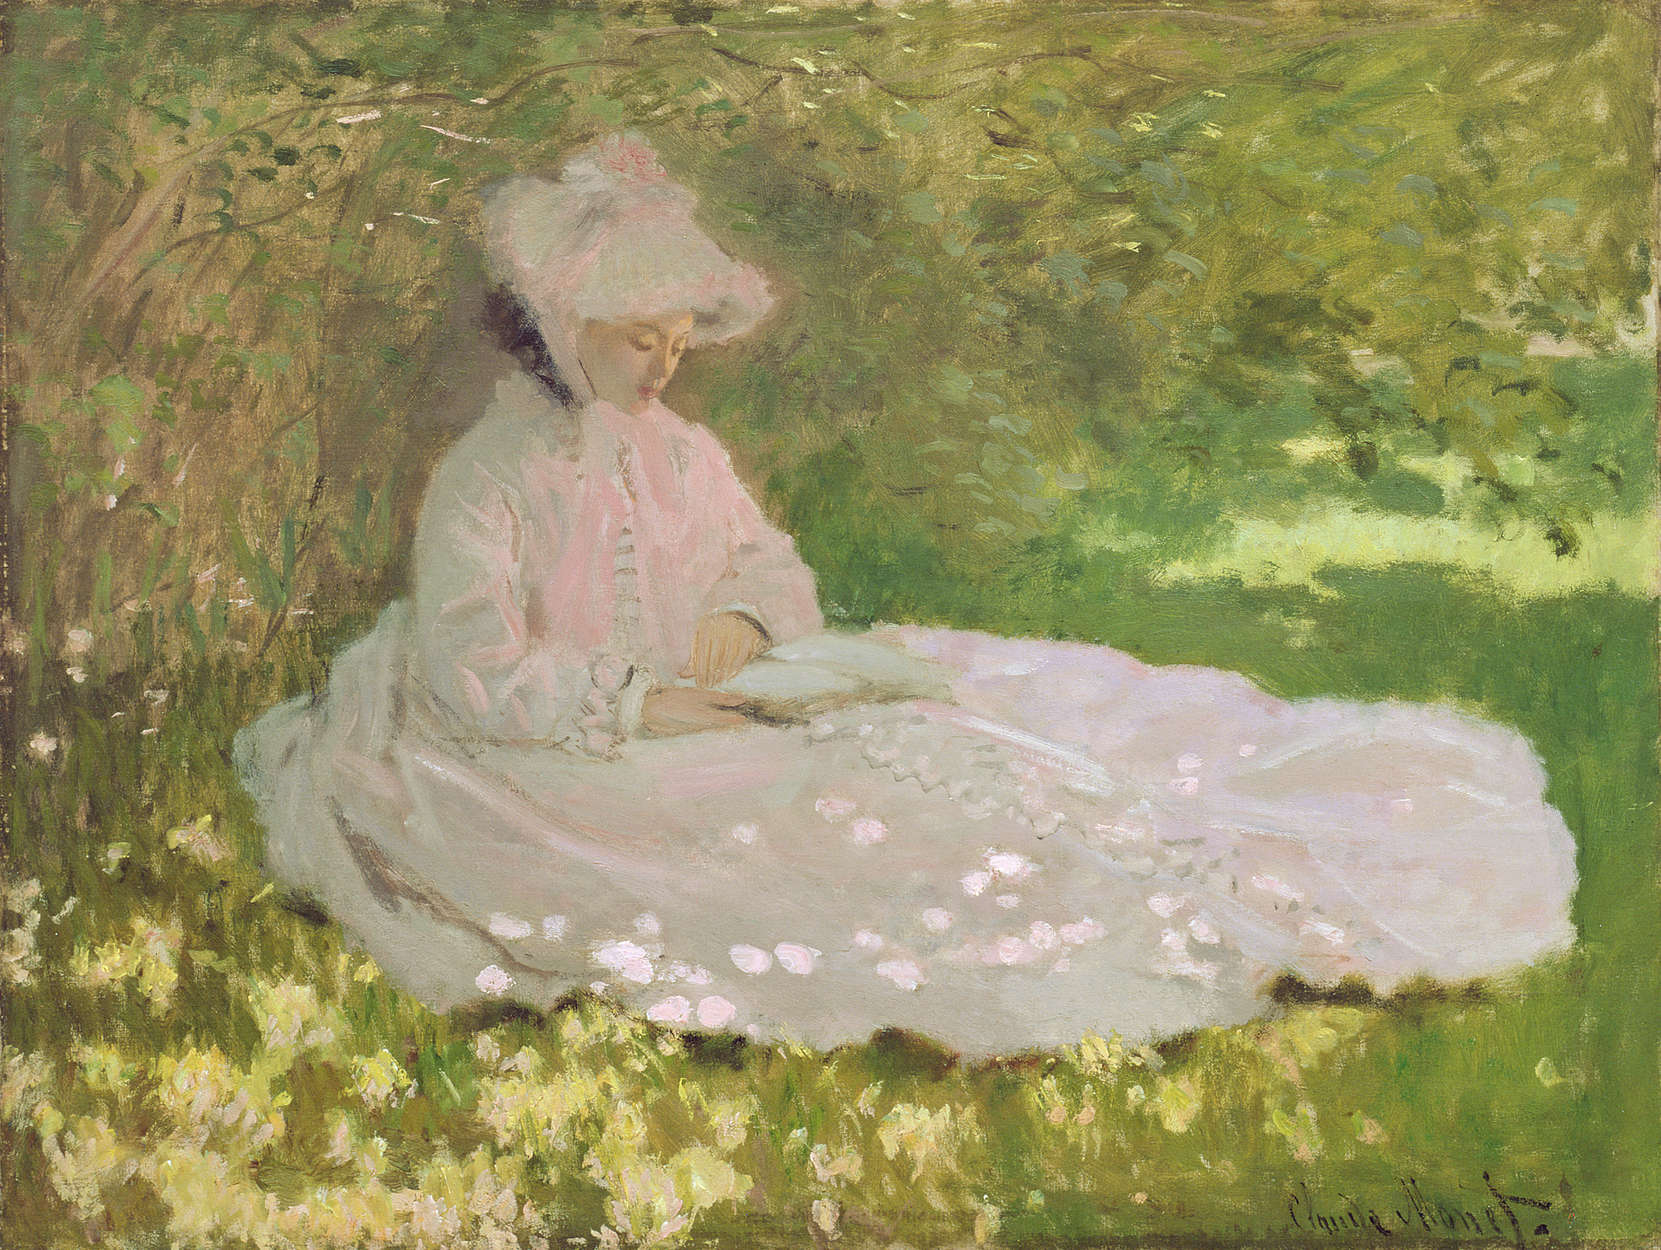             Fototapete "Der Frühling" von Claude Monet
        